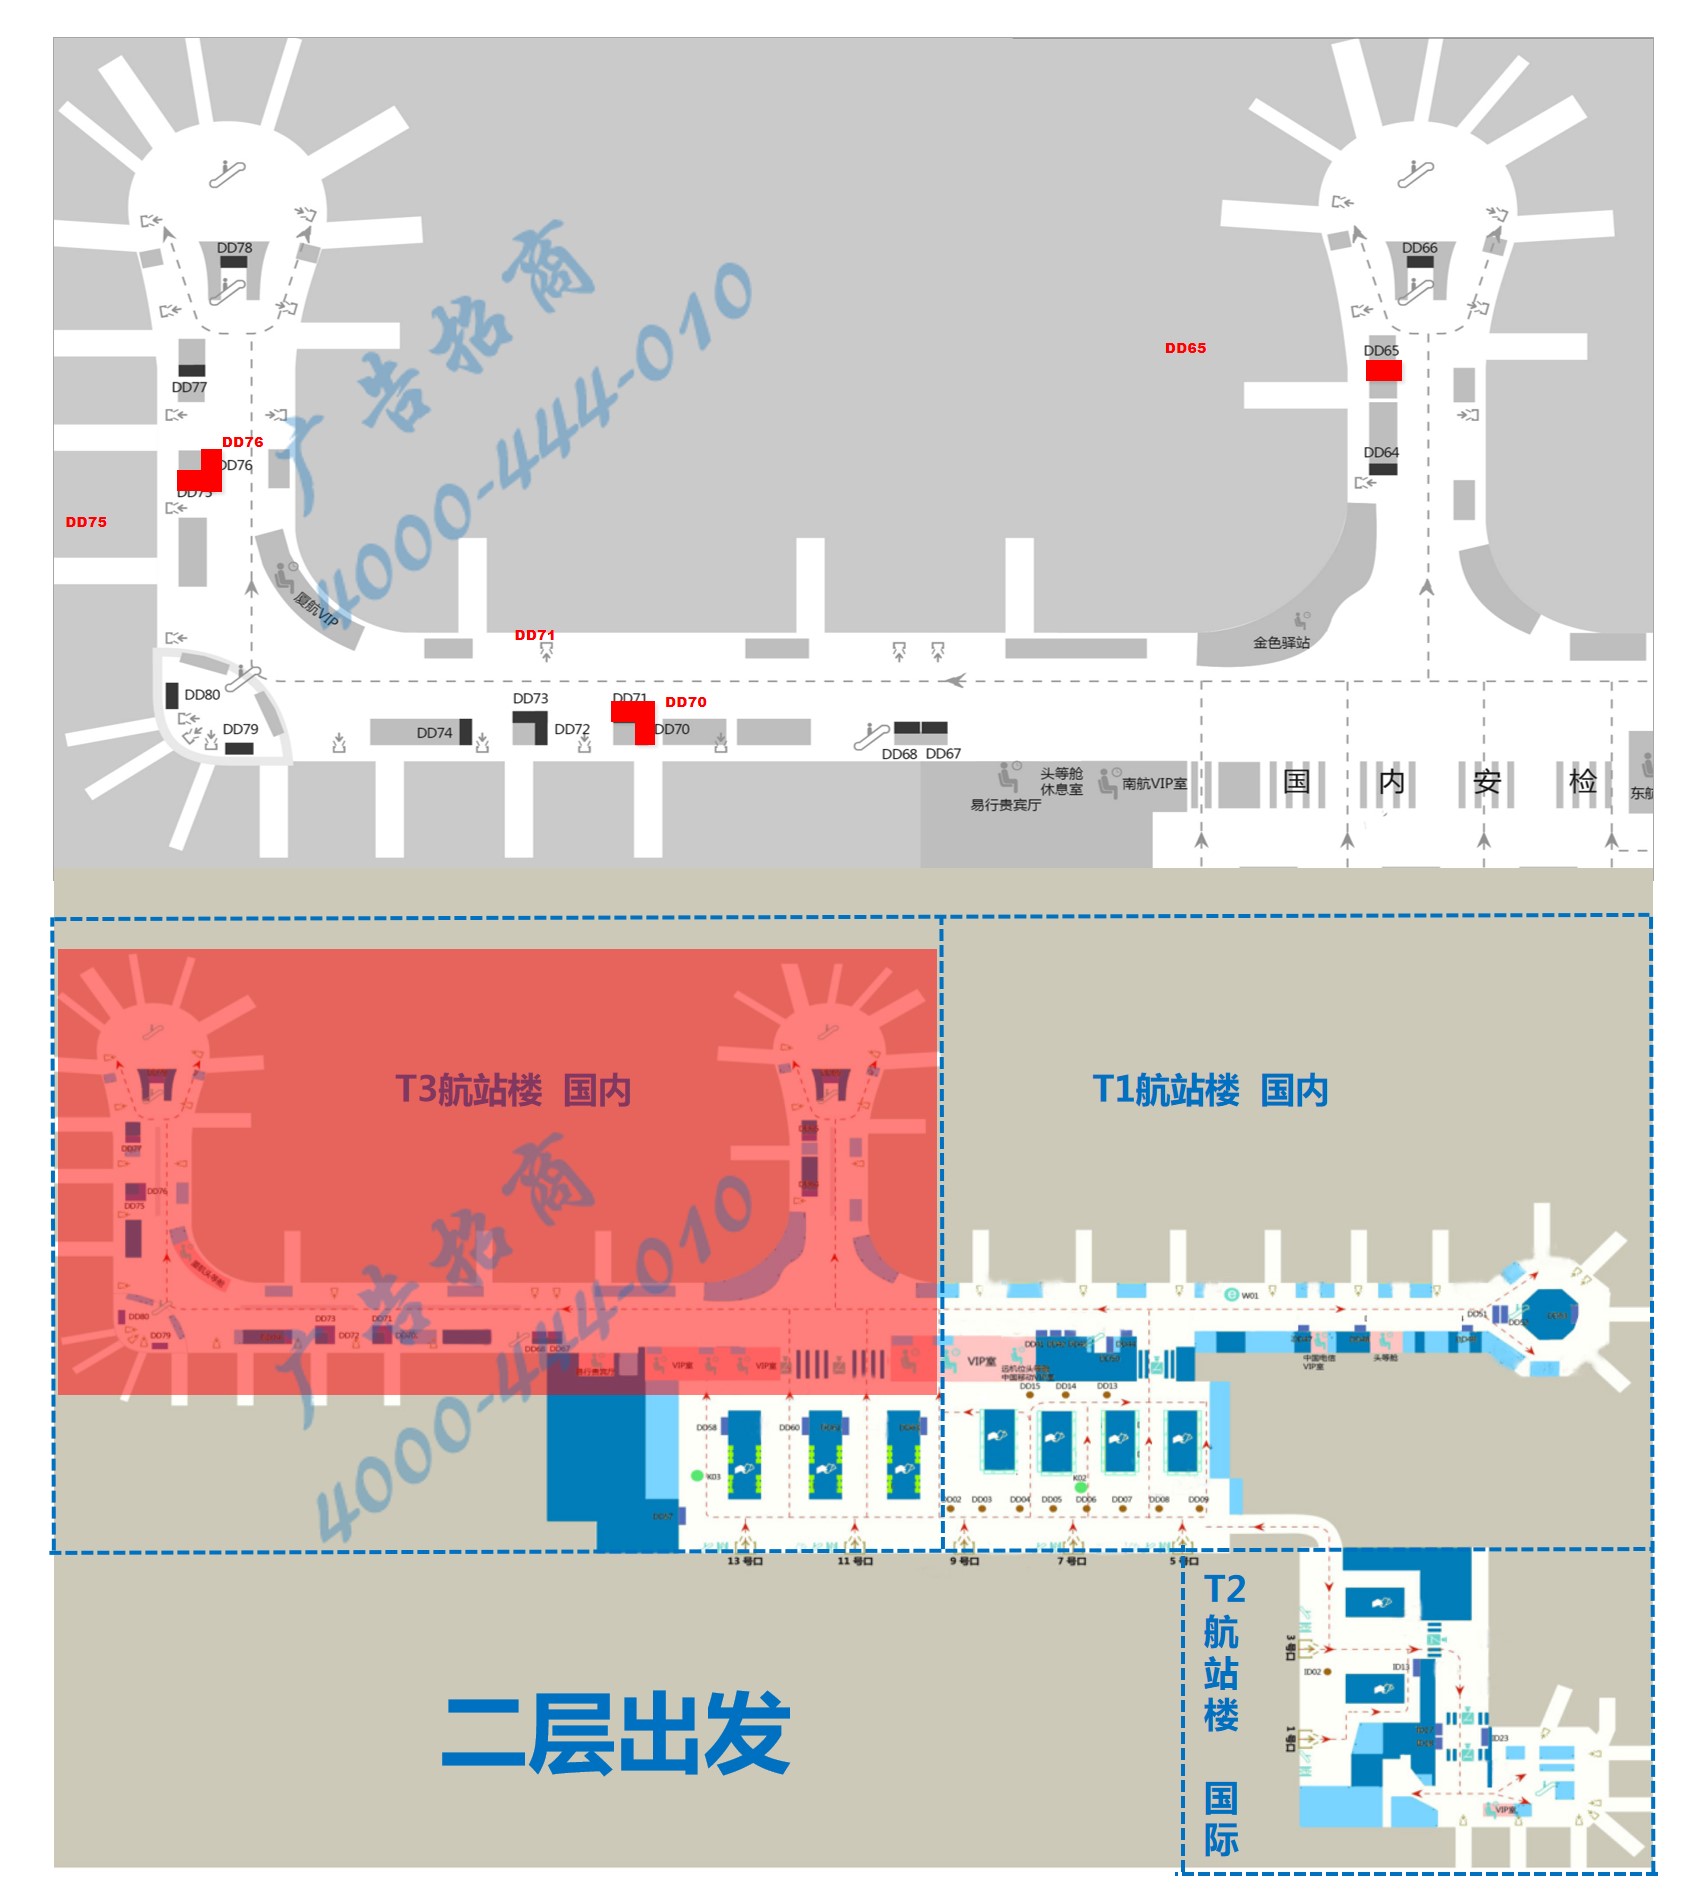 杭州机场T3登机口旁灯箱组广告